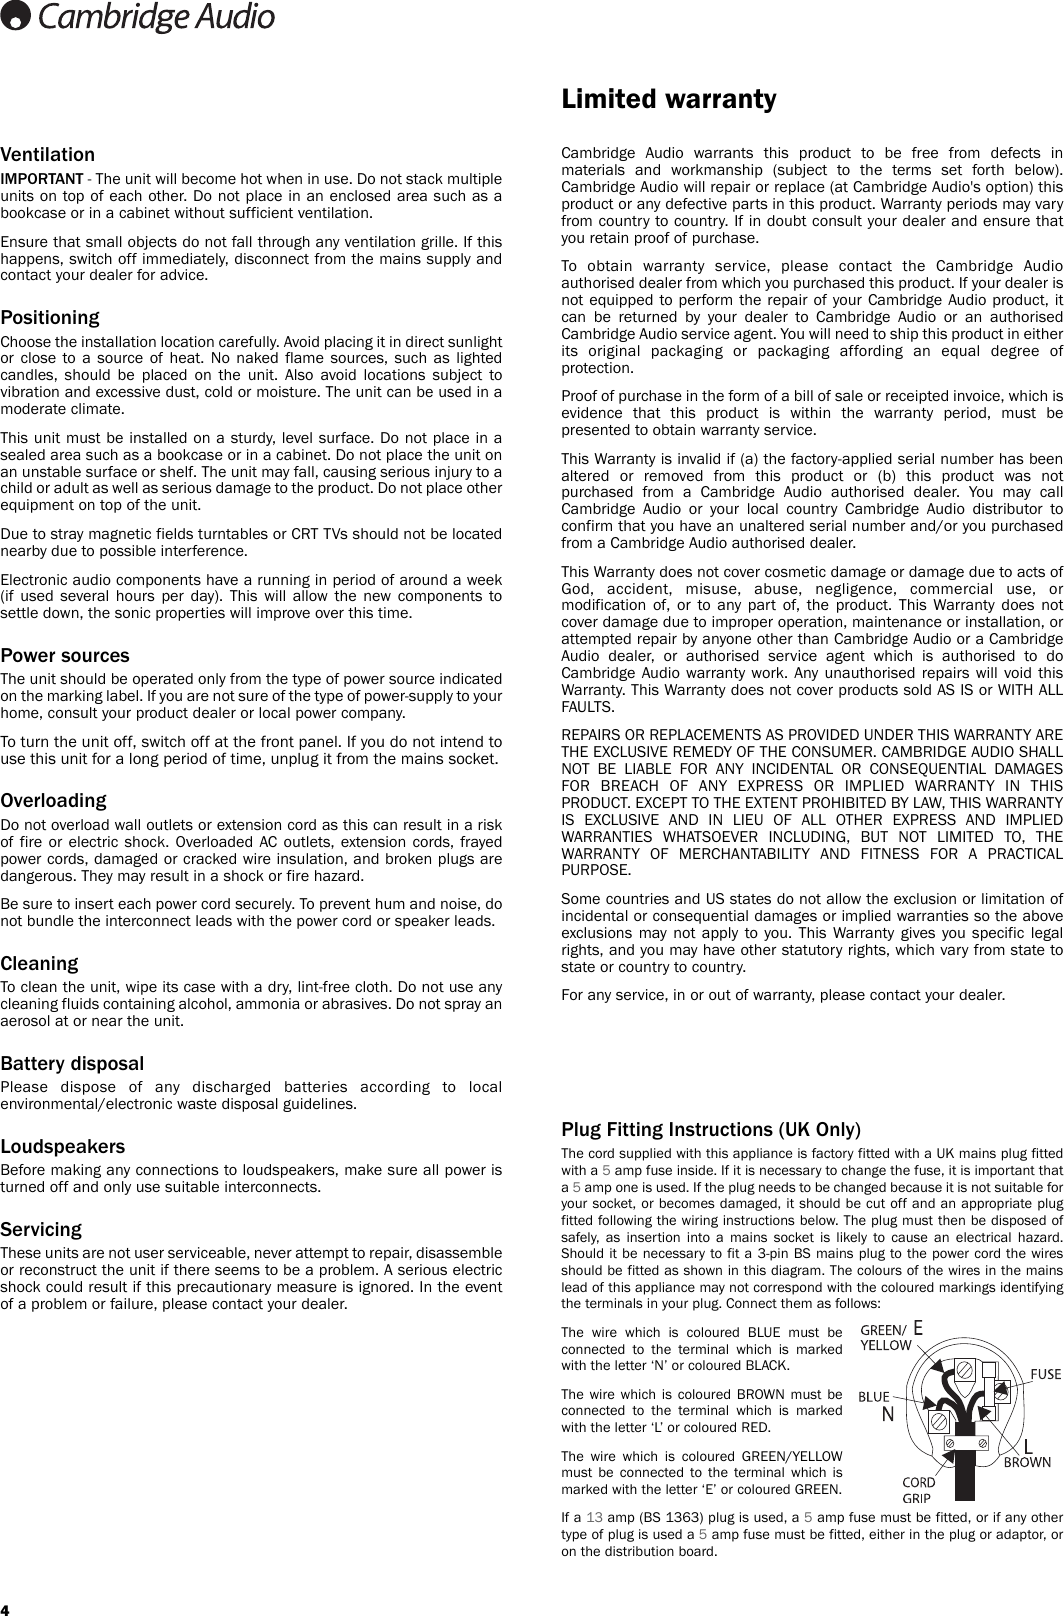 Page 4 of 10 - Cambridge-Audio Cambridge-Audio-Topaz-Cd10-Users-Manual-  Cambridge-audio-topaz-cd10-users-manual